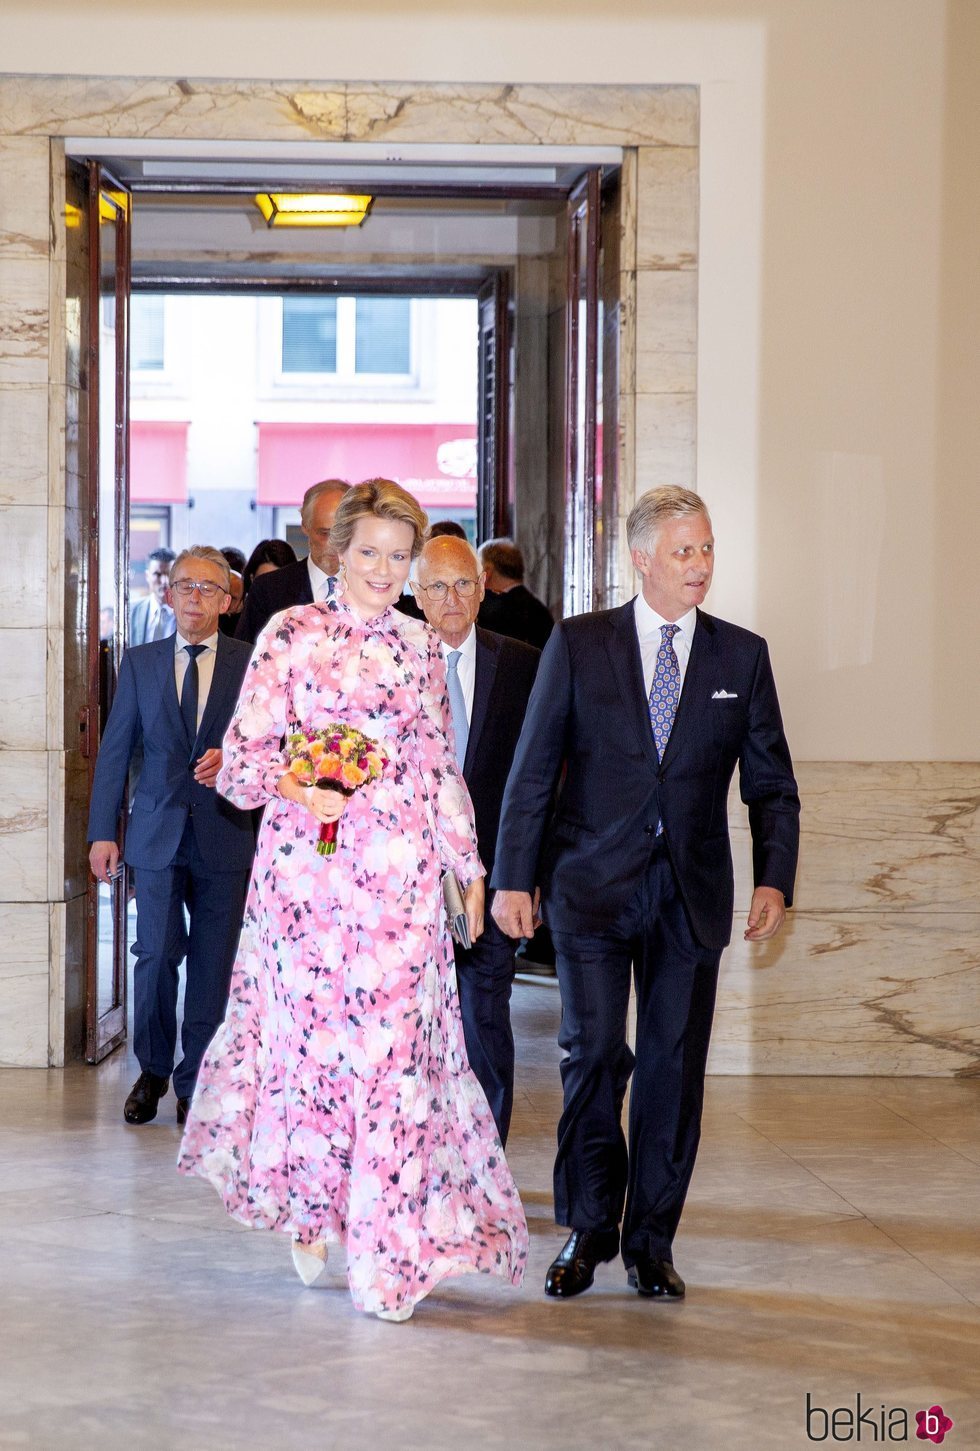 La Reina Matilde de Bélgica con un vestido de estampado floral de la firma Erdem en un espectáculo celebrado en la Ópera de Bruselas